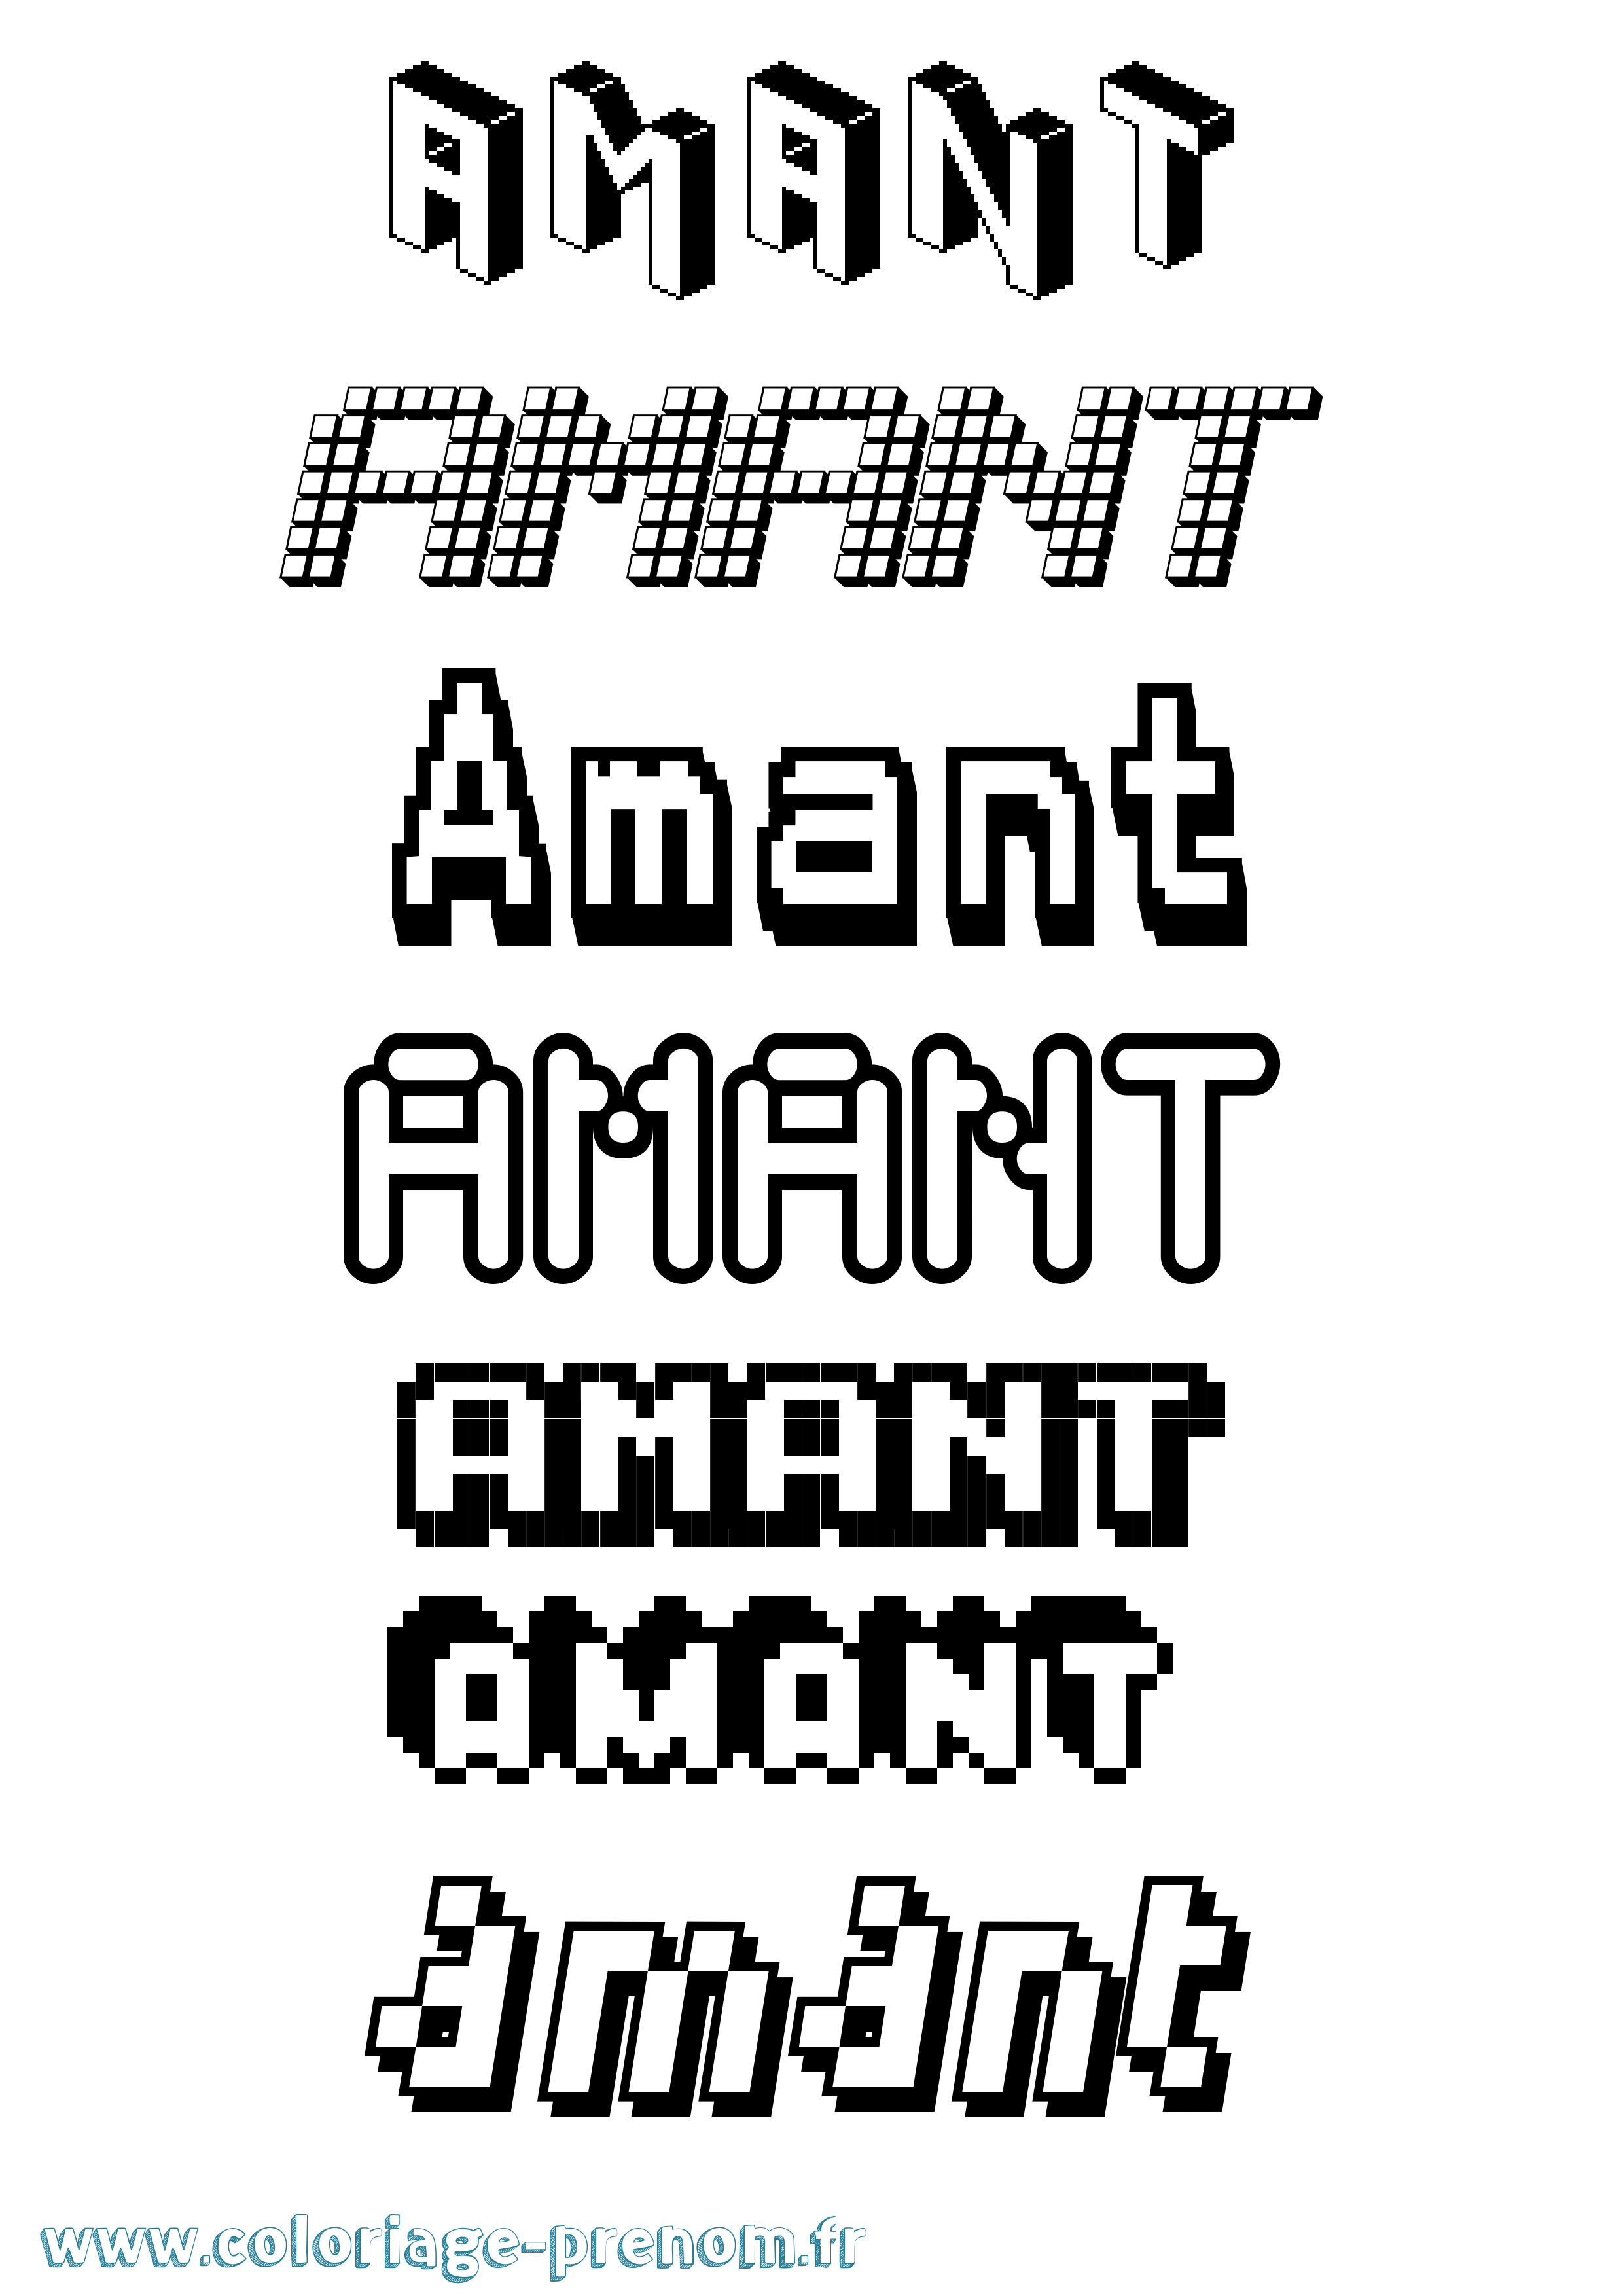 Coloriage prénom Amant Pixel